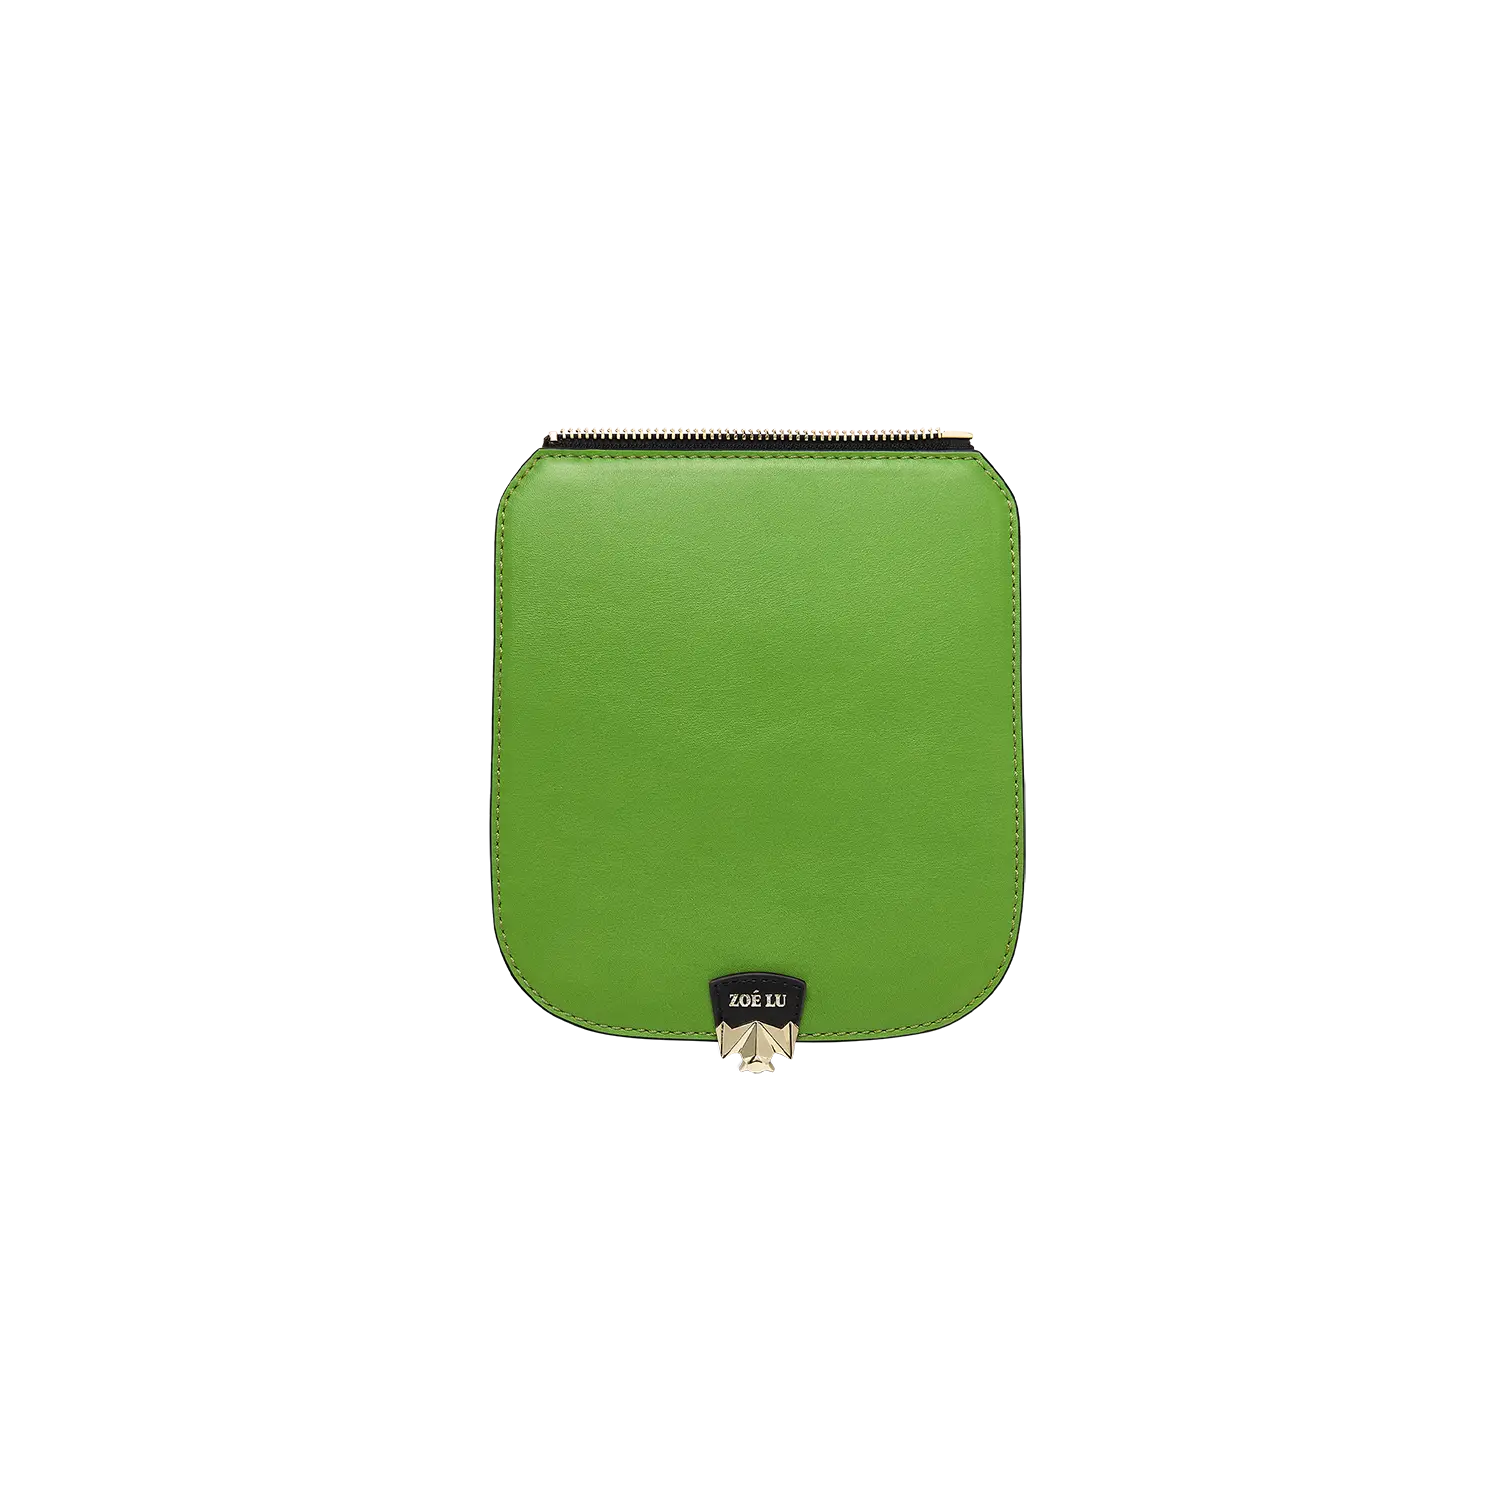 Wechselklappe - La Mini Lime - grün